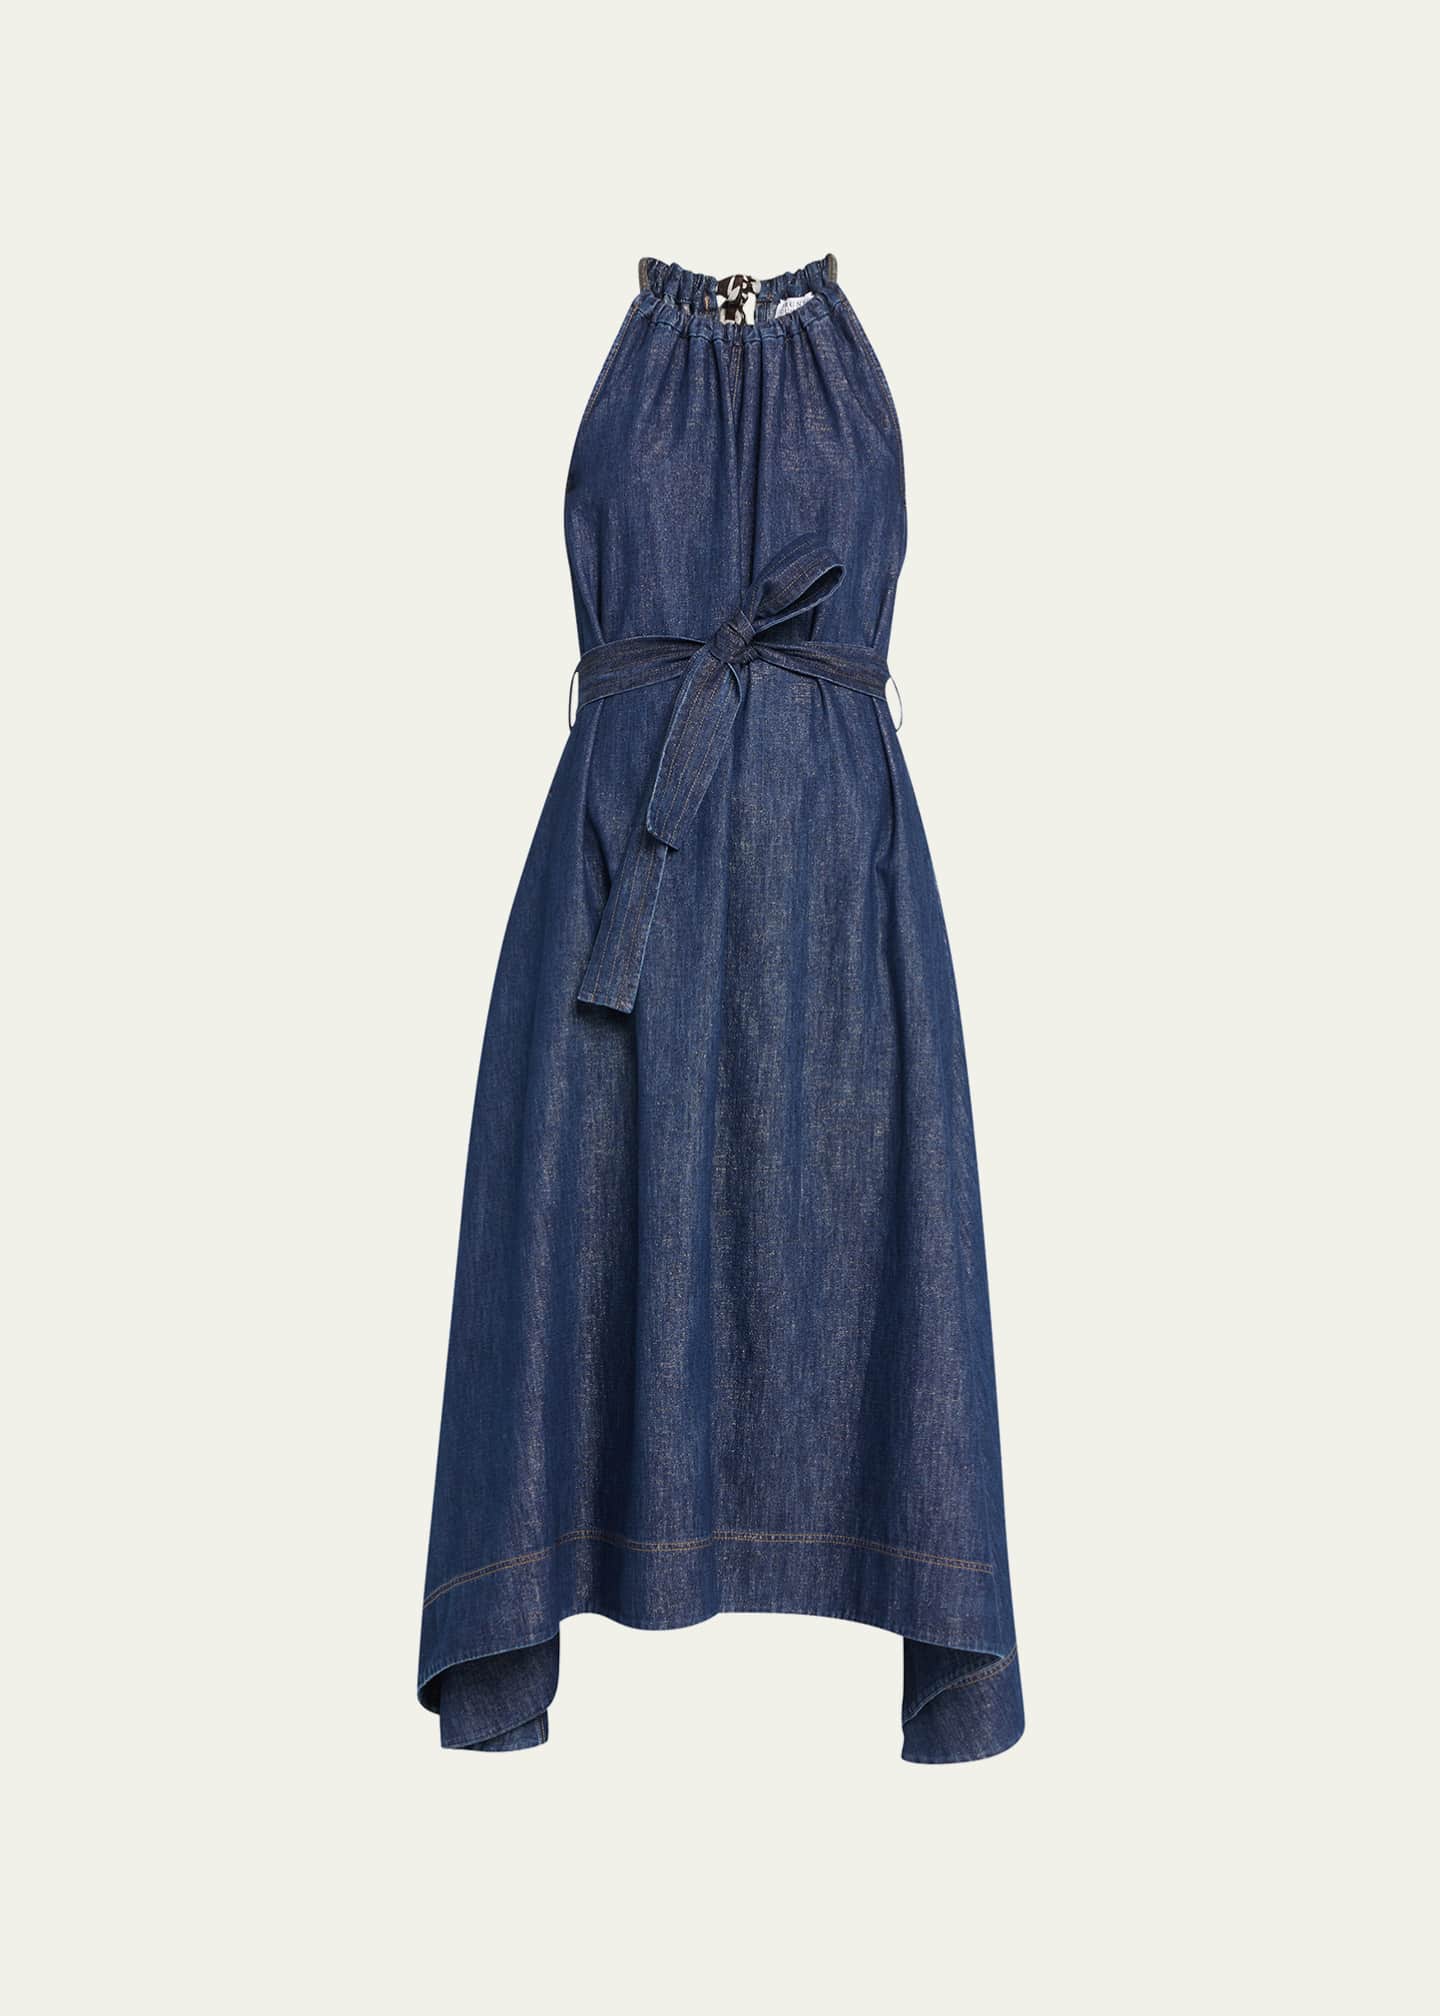 Brunello Cucinelli Denim Belted Midi Dress With Monili Neckline Bergdorf Goodman